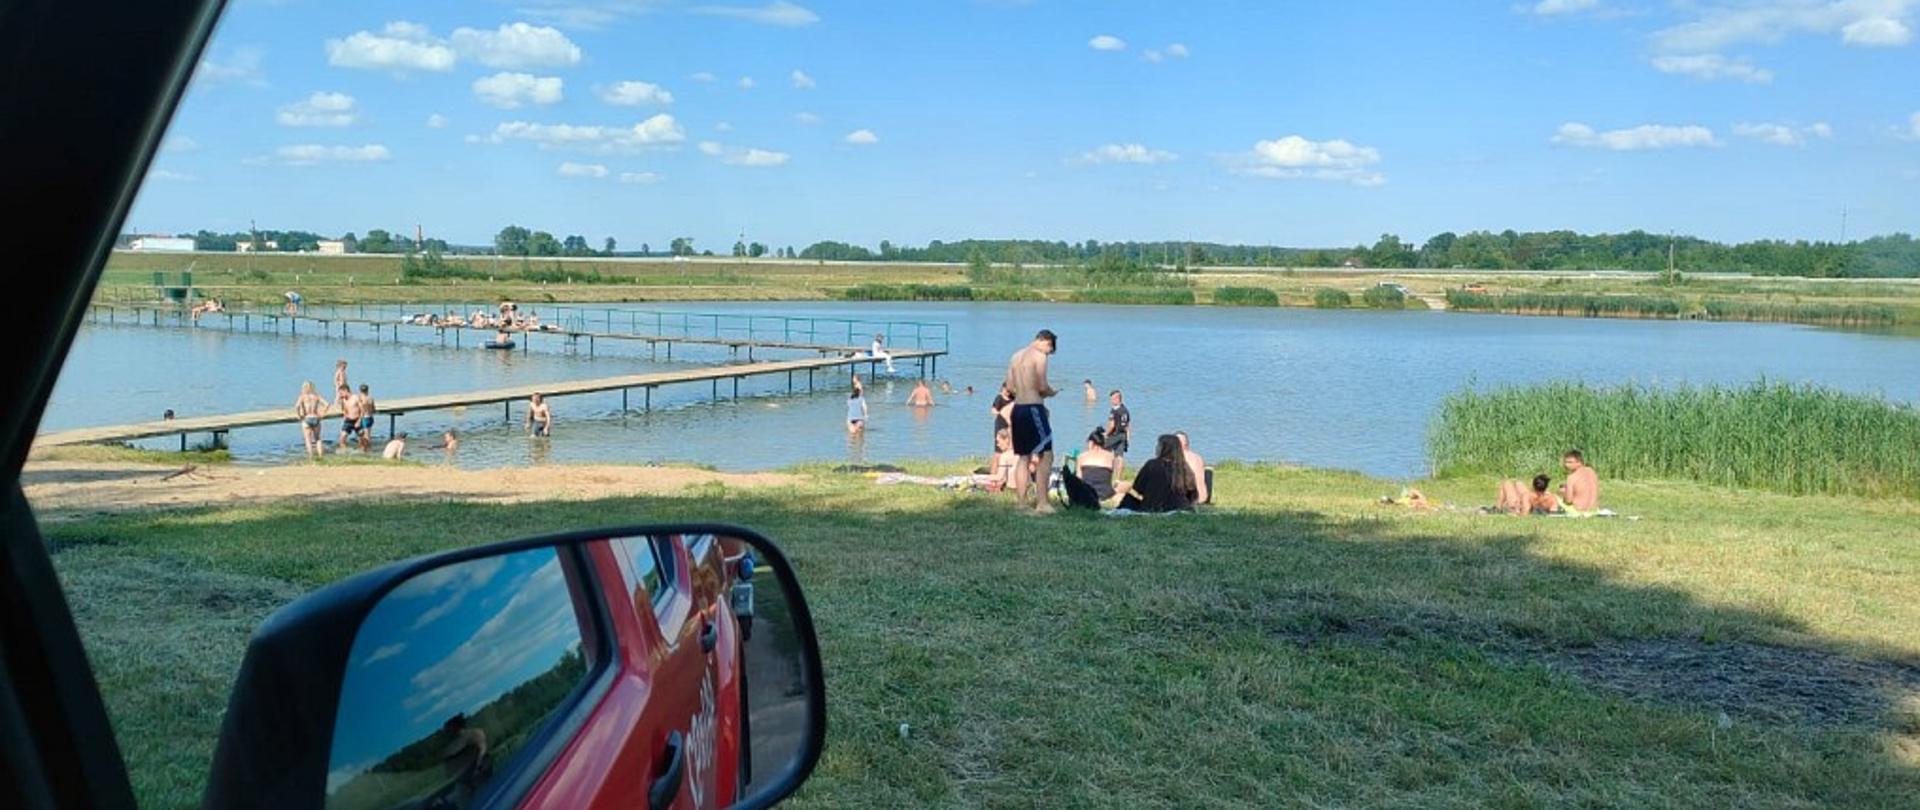 Na zdjęciu widać osoby kąpiące się nad zalewem